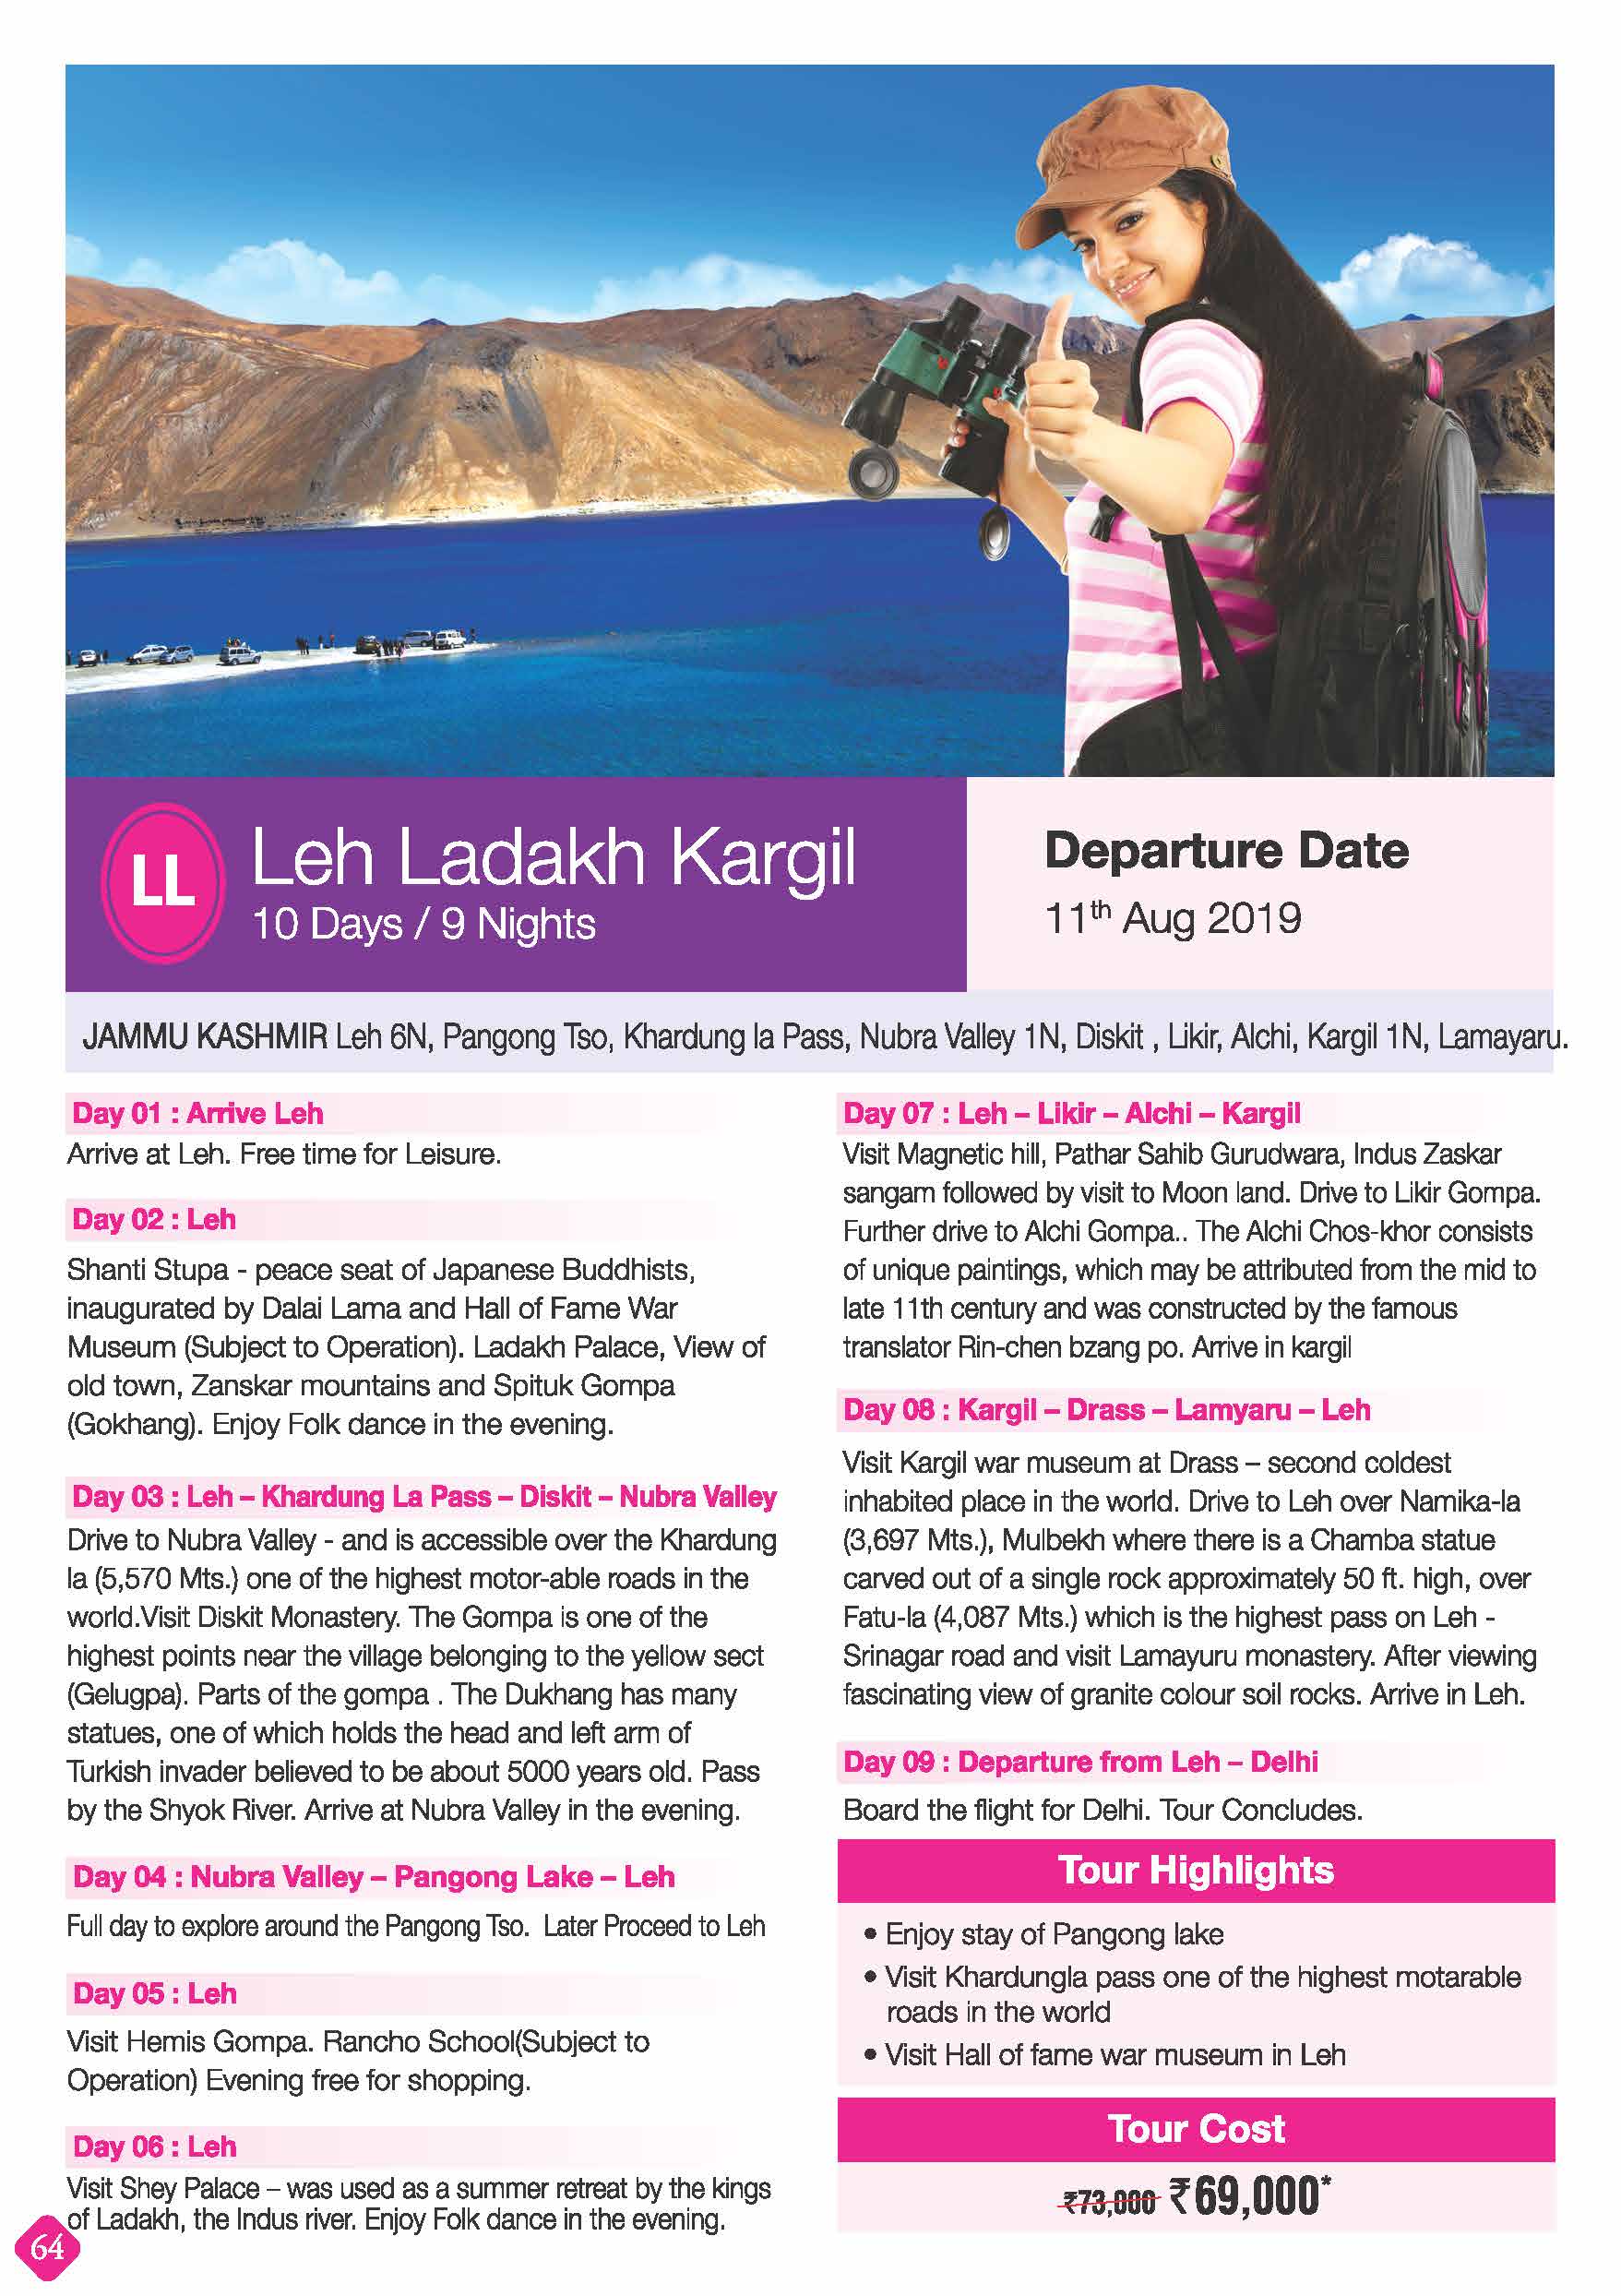 kesari women's special tours in india